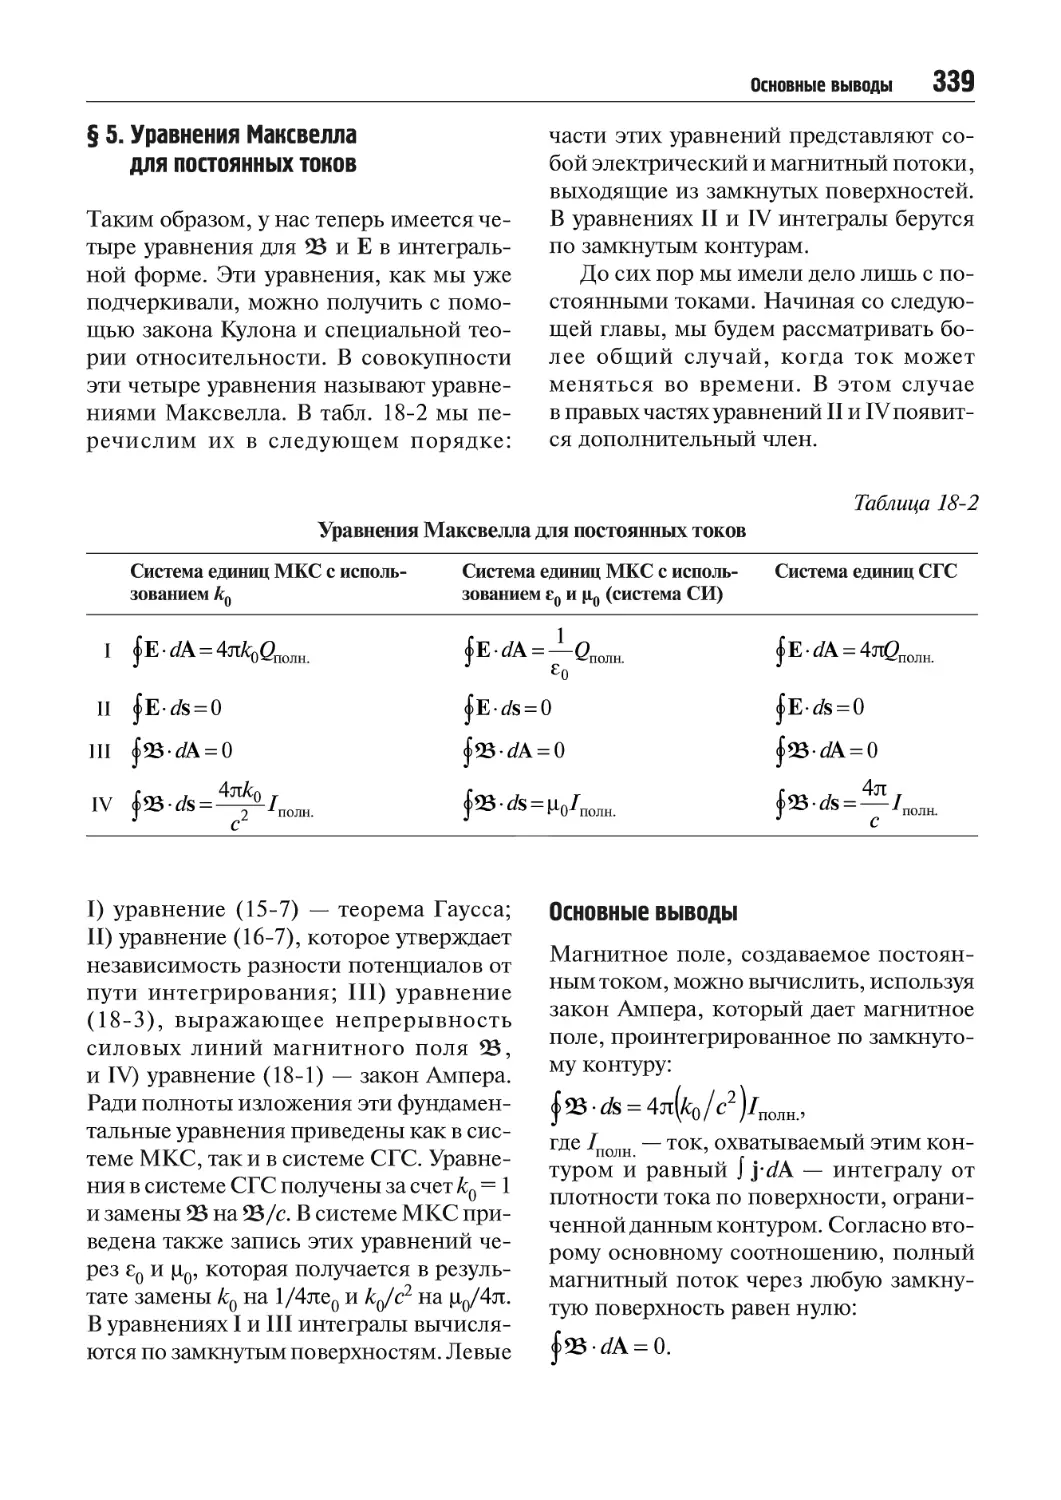 § 5. Уравнения Максвелла для постоянных токов
Основные выводы